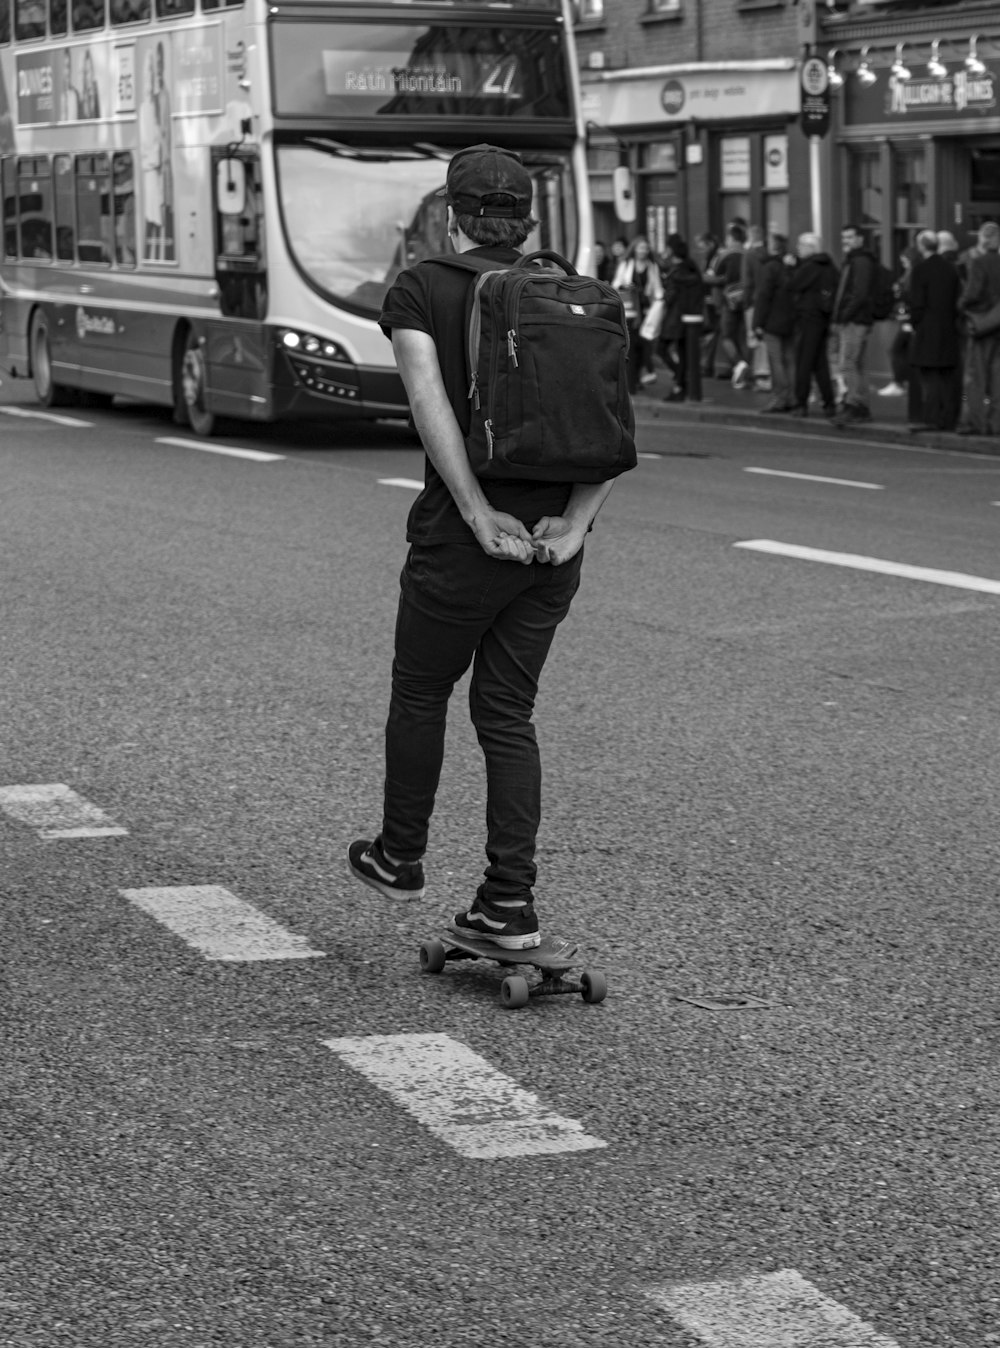 man skateboarding on road near bus in grayscale